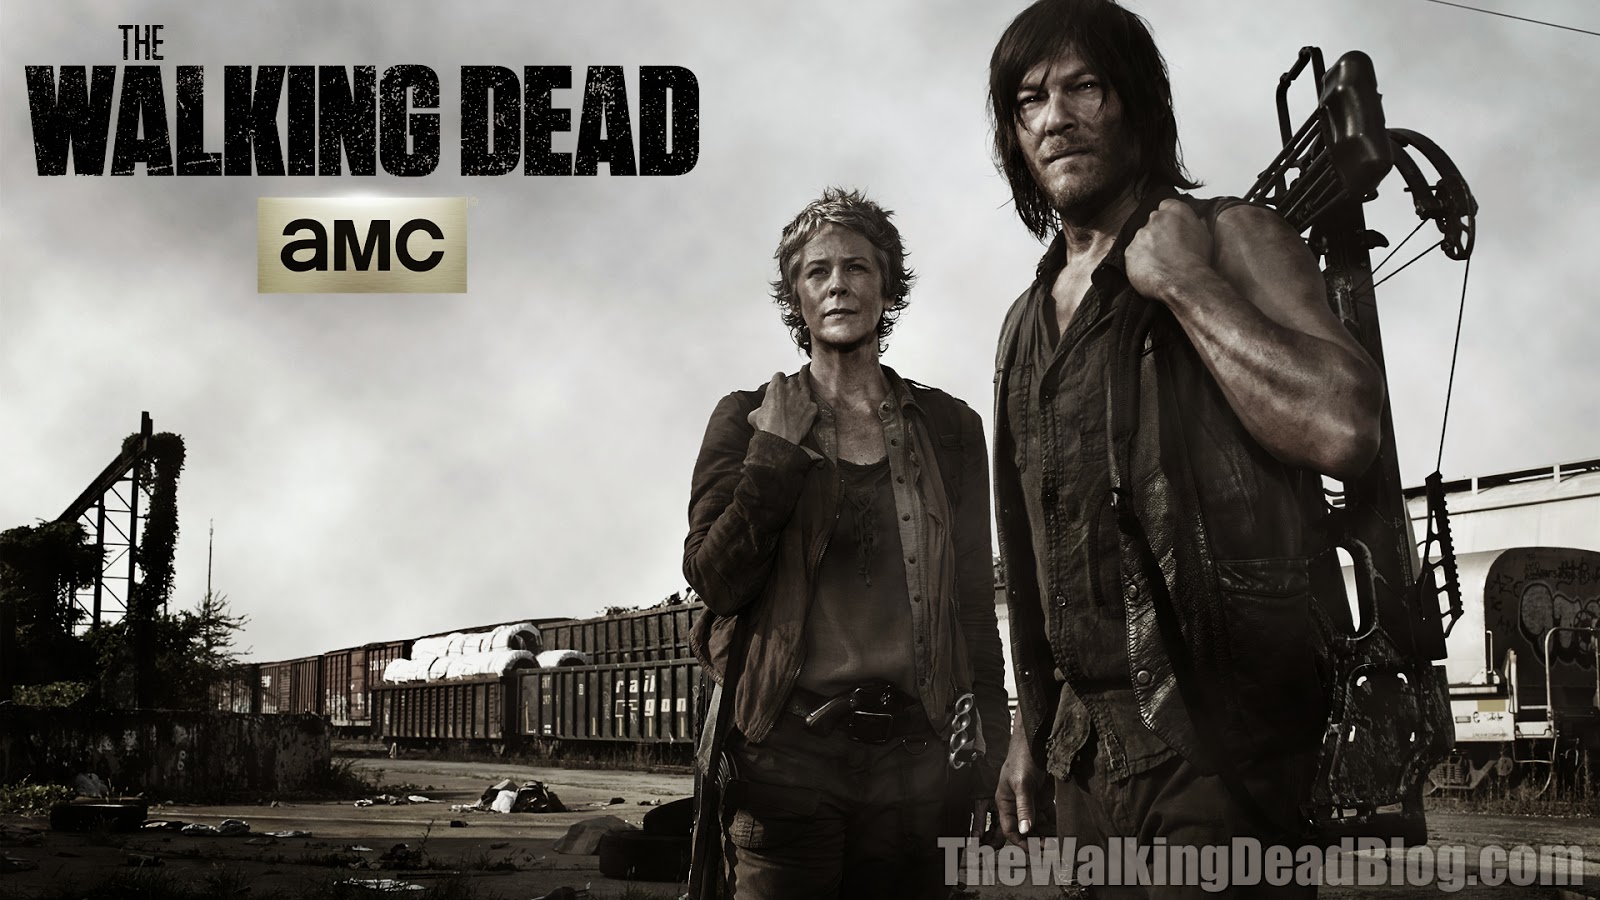 The Walking Dead Blog New Walking Dead Season 5 Wallpaper